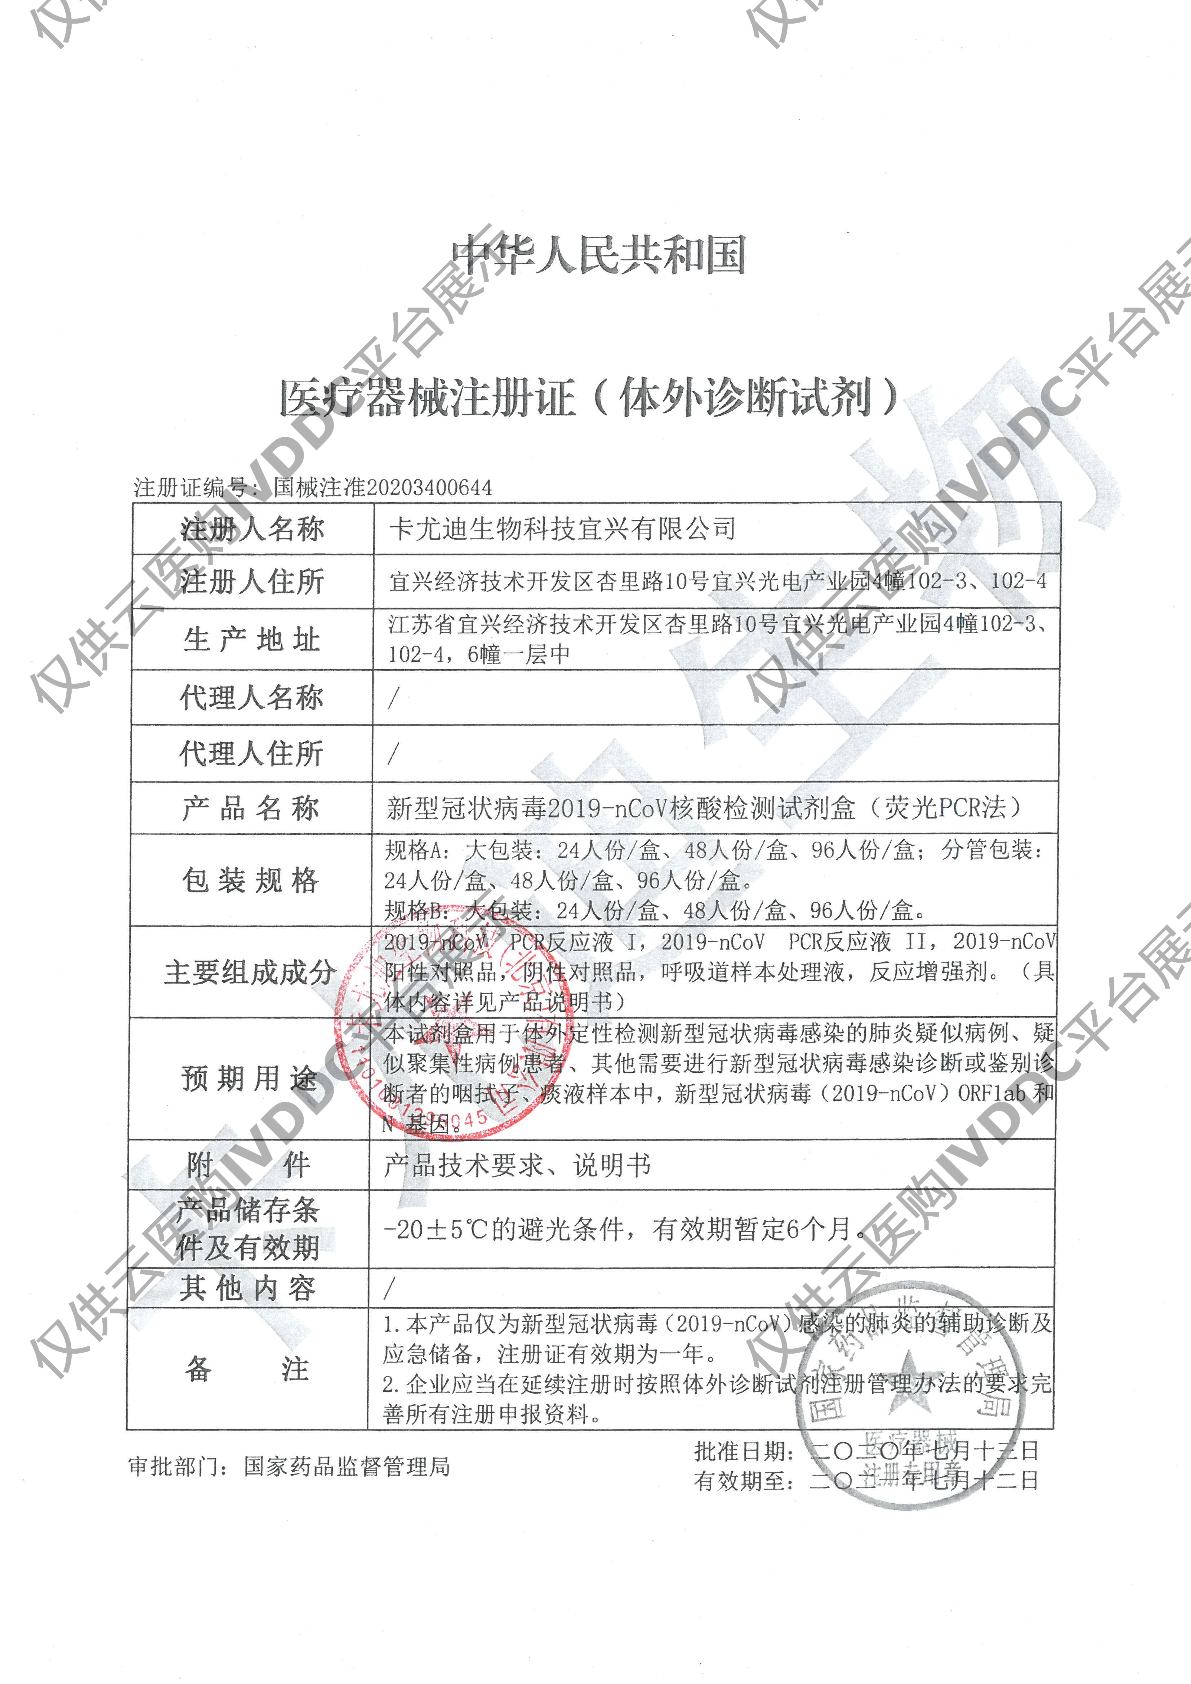 【卡尤迪】新型冠状病毒2019-nCoV核酸检测试剂盒(荧光PCR法)注册证